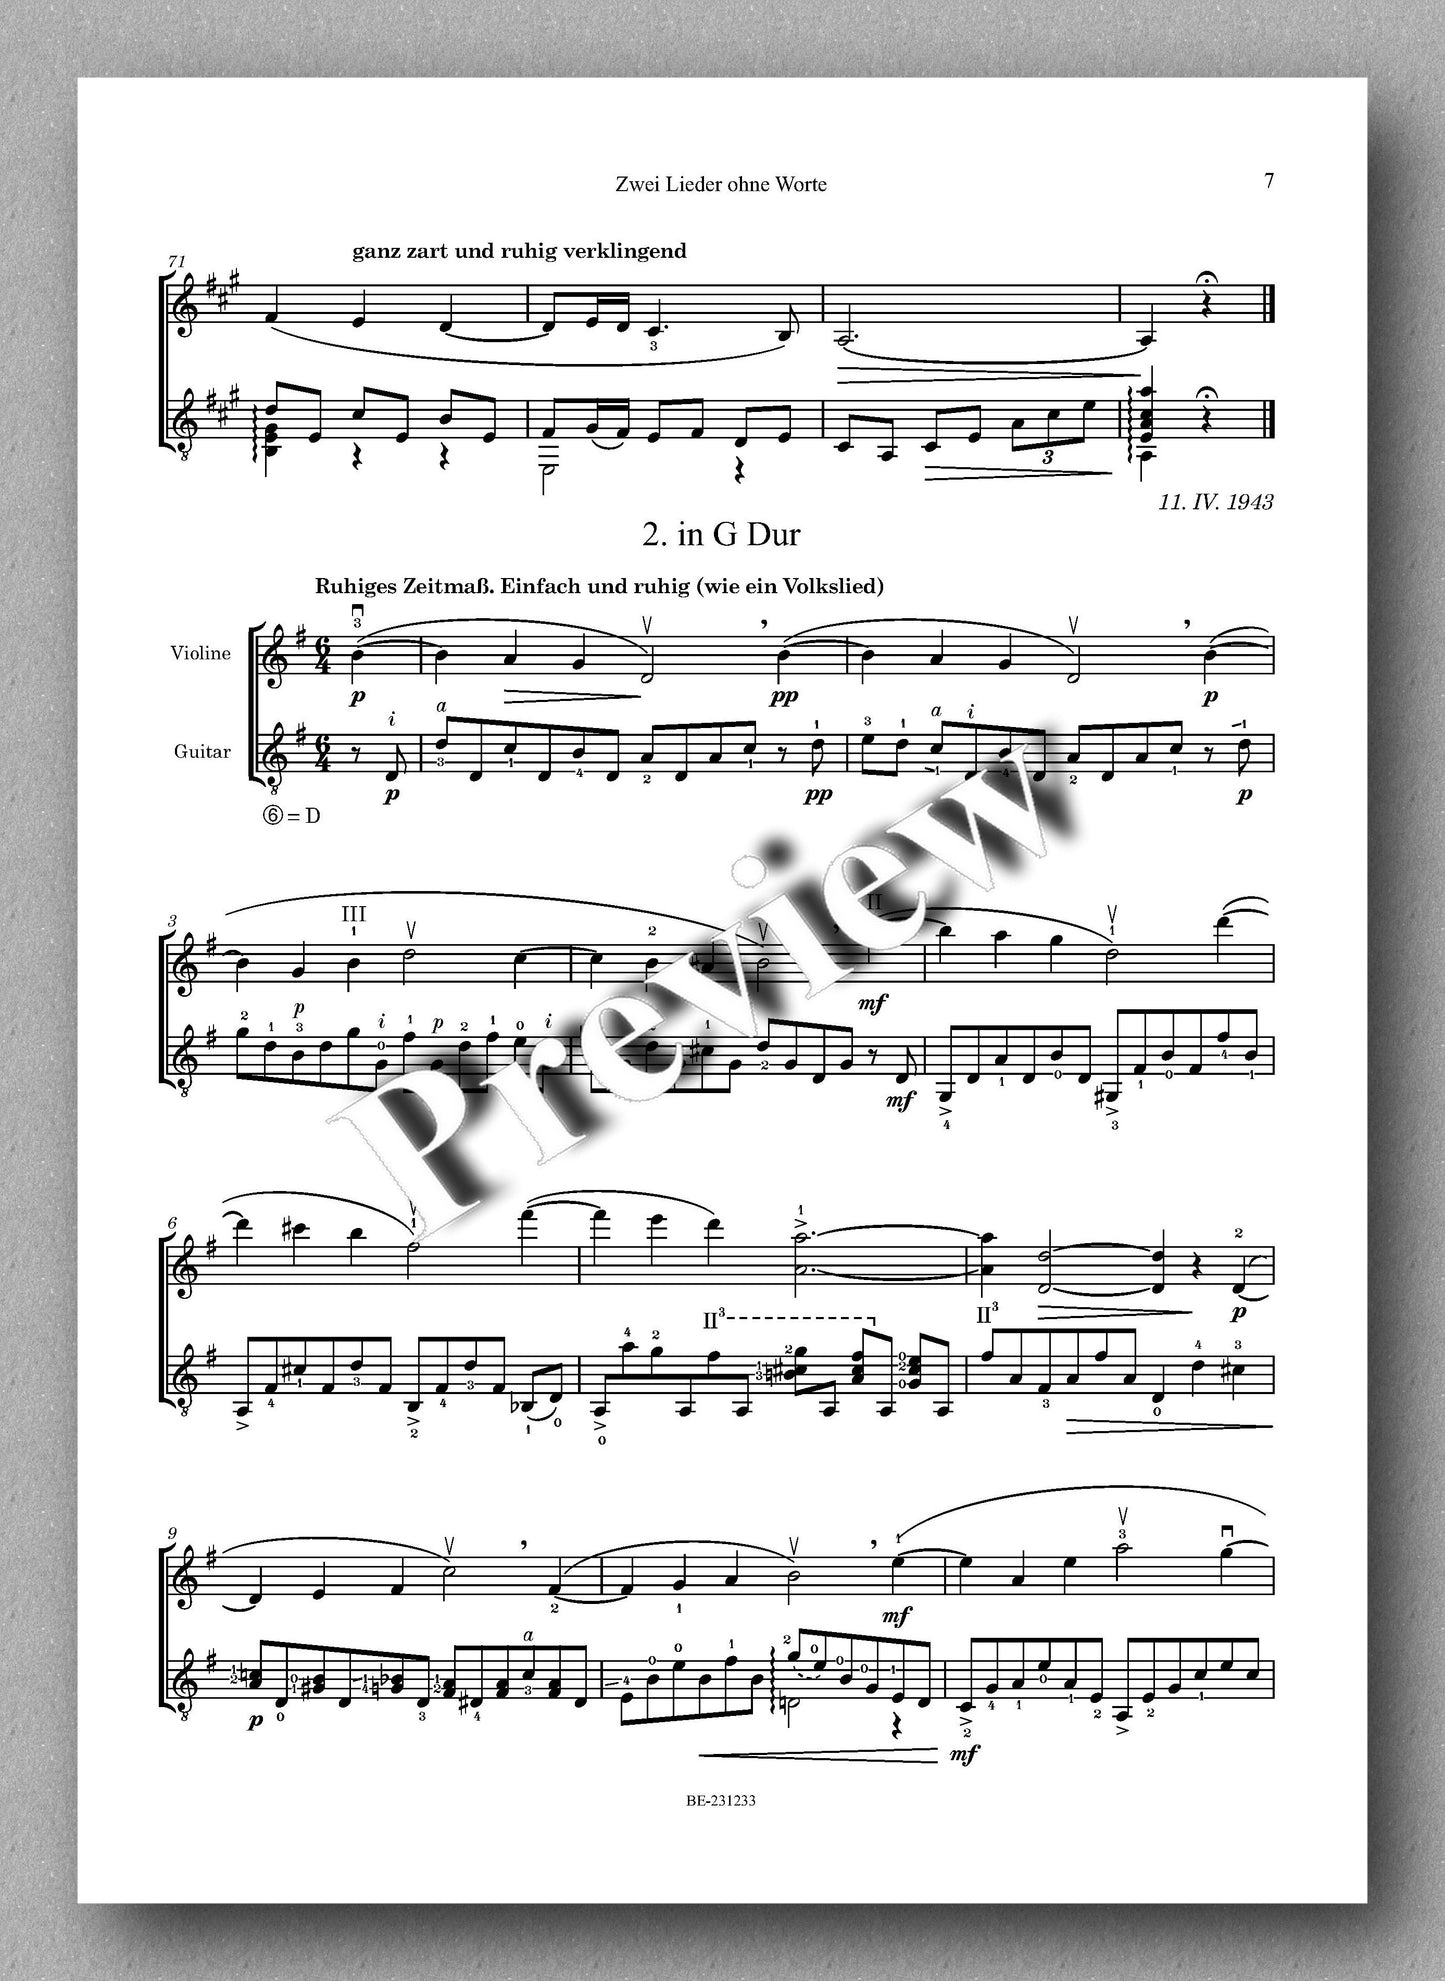 Ferdinand Rebay, Zwei Lieder ohne Worte - preview of the music score 2